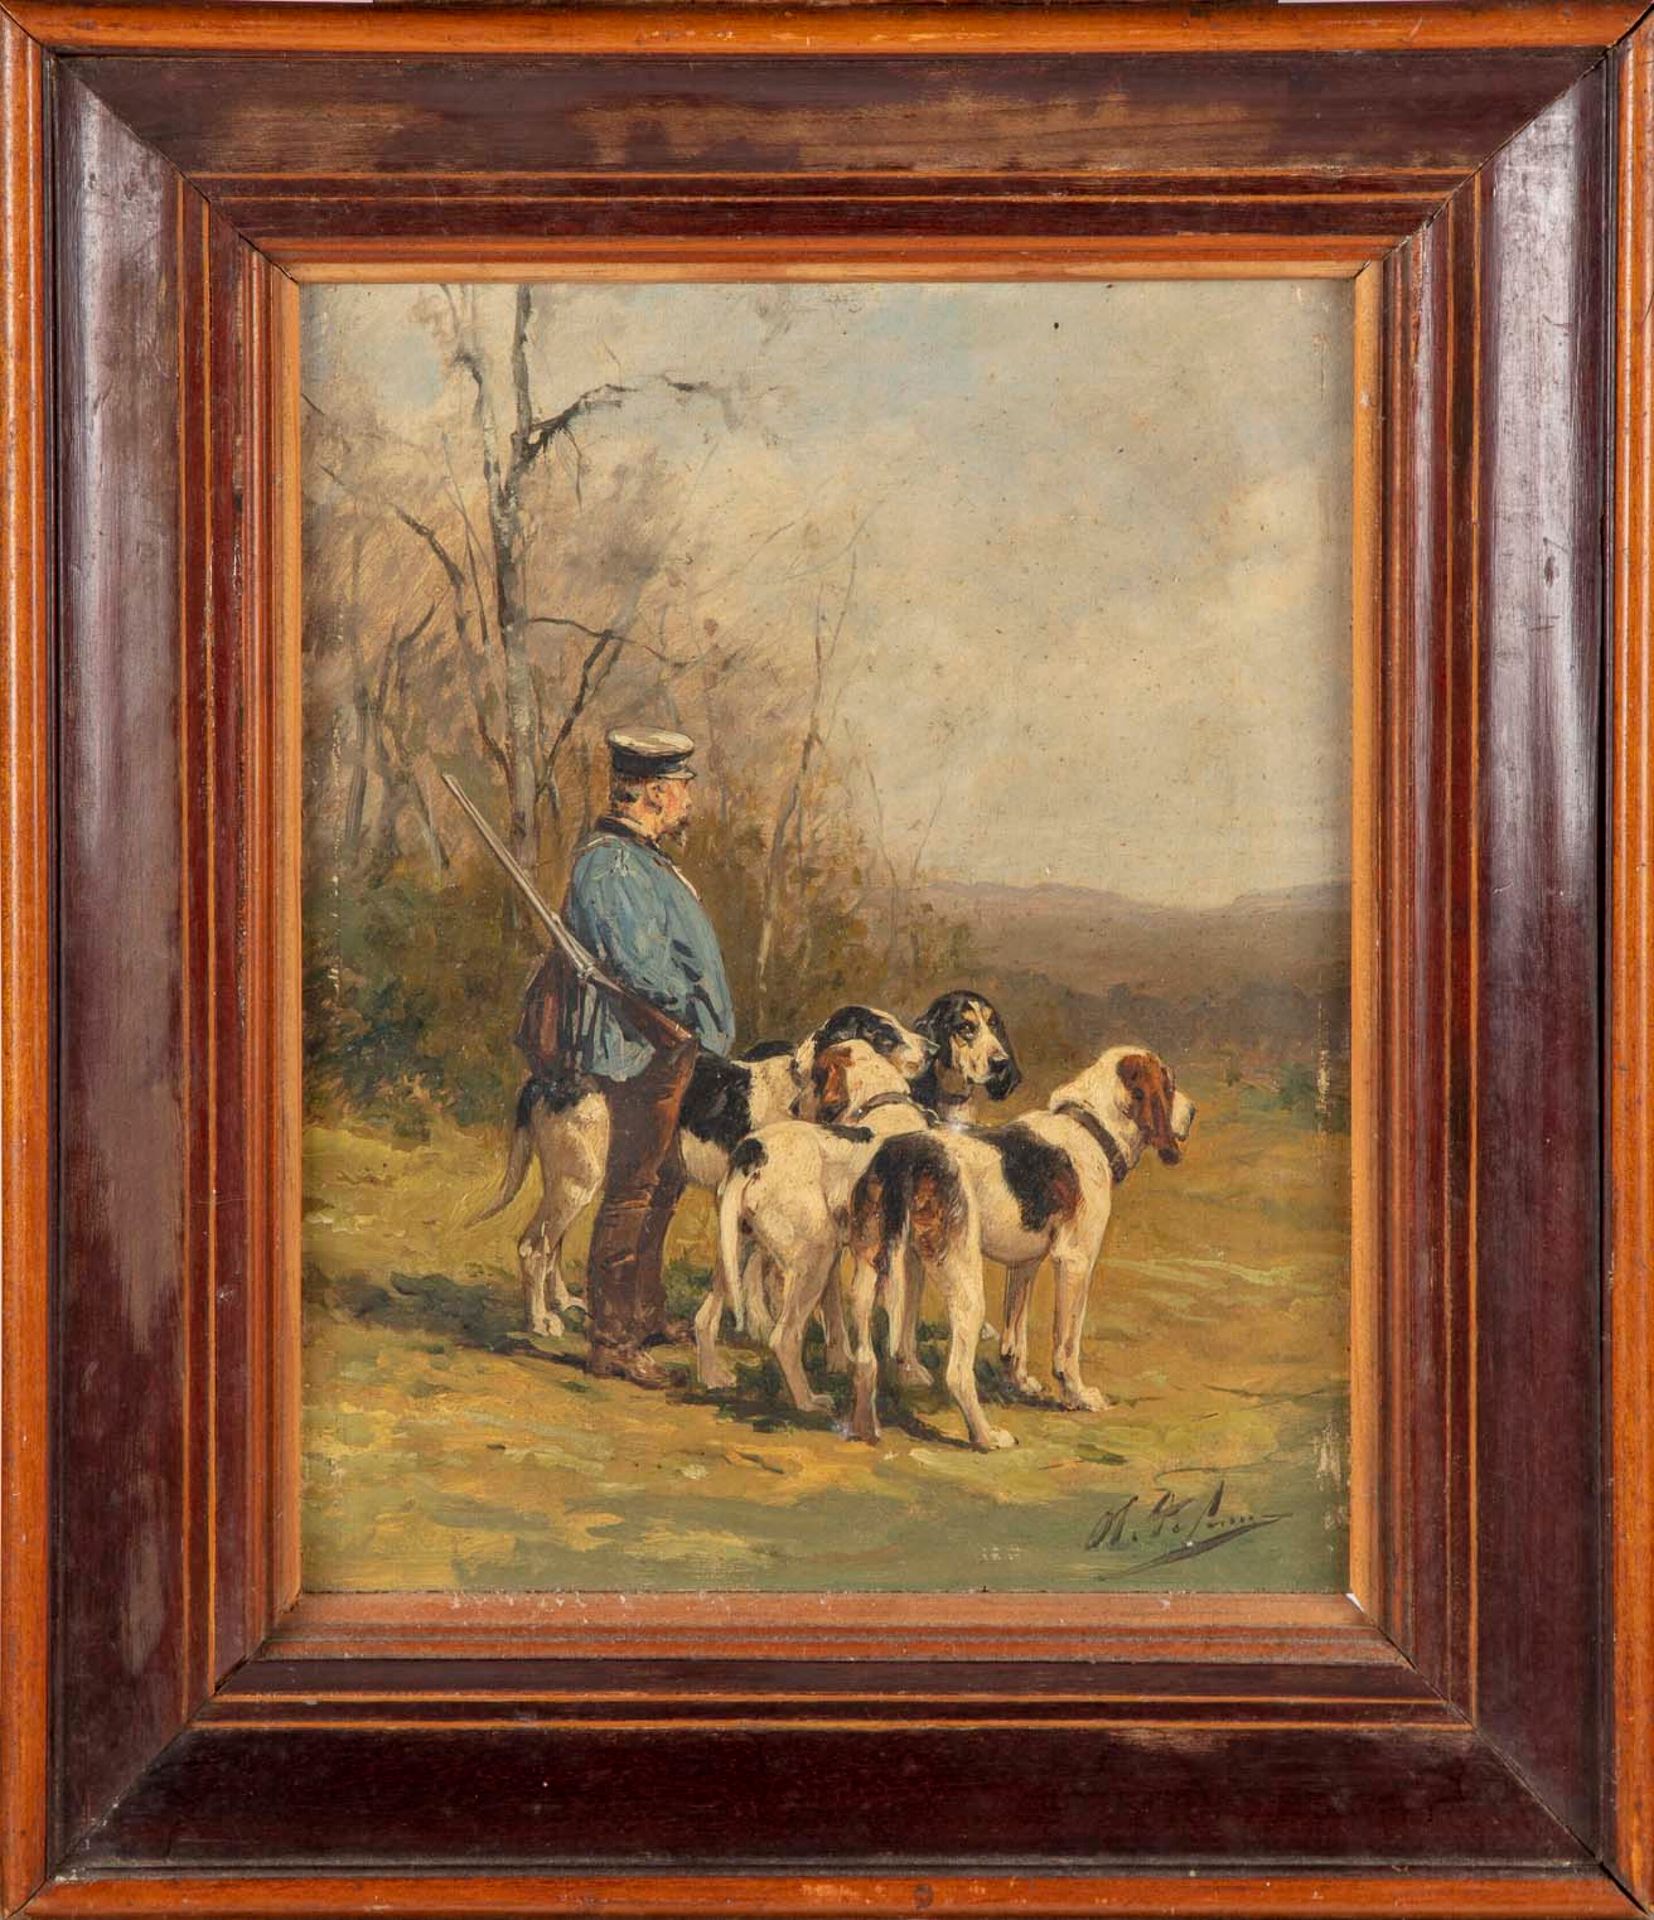 De Penne Olivier Charles de PENNE (1831-1897).

Hunter y sus perros

Perros de c&hellip;